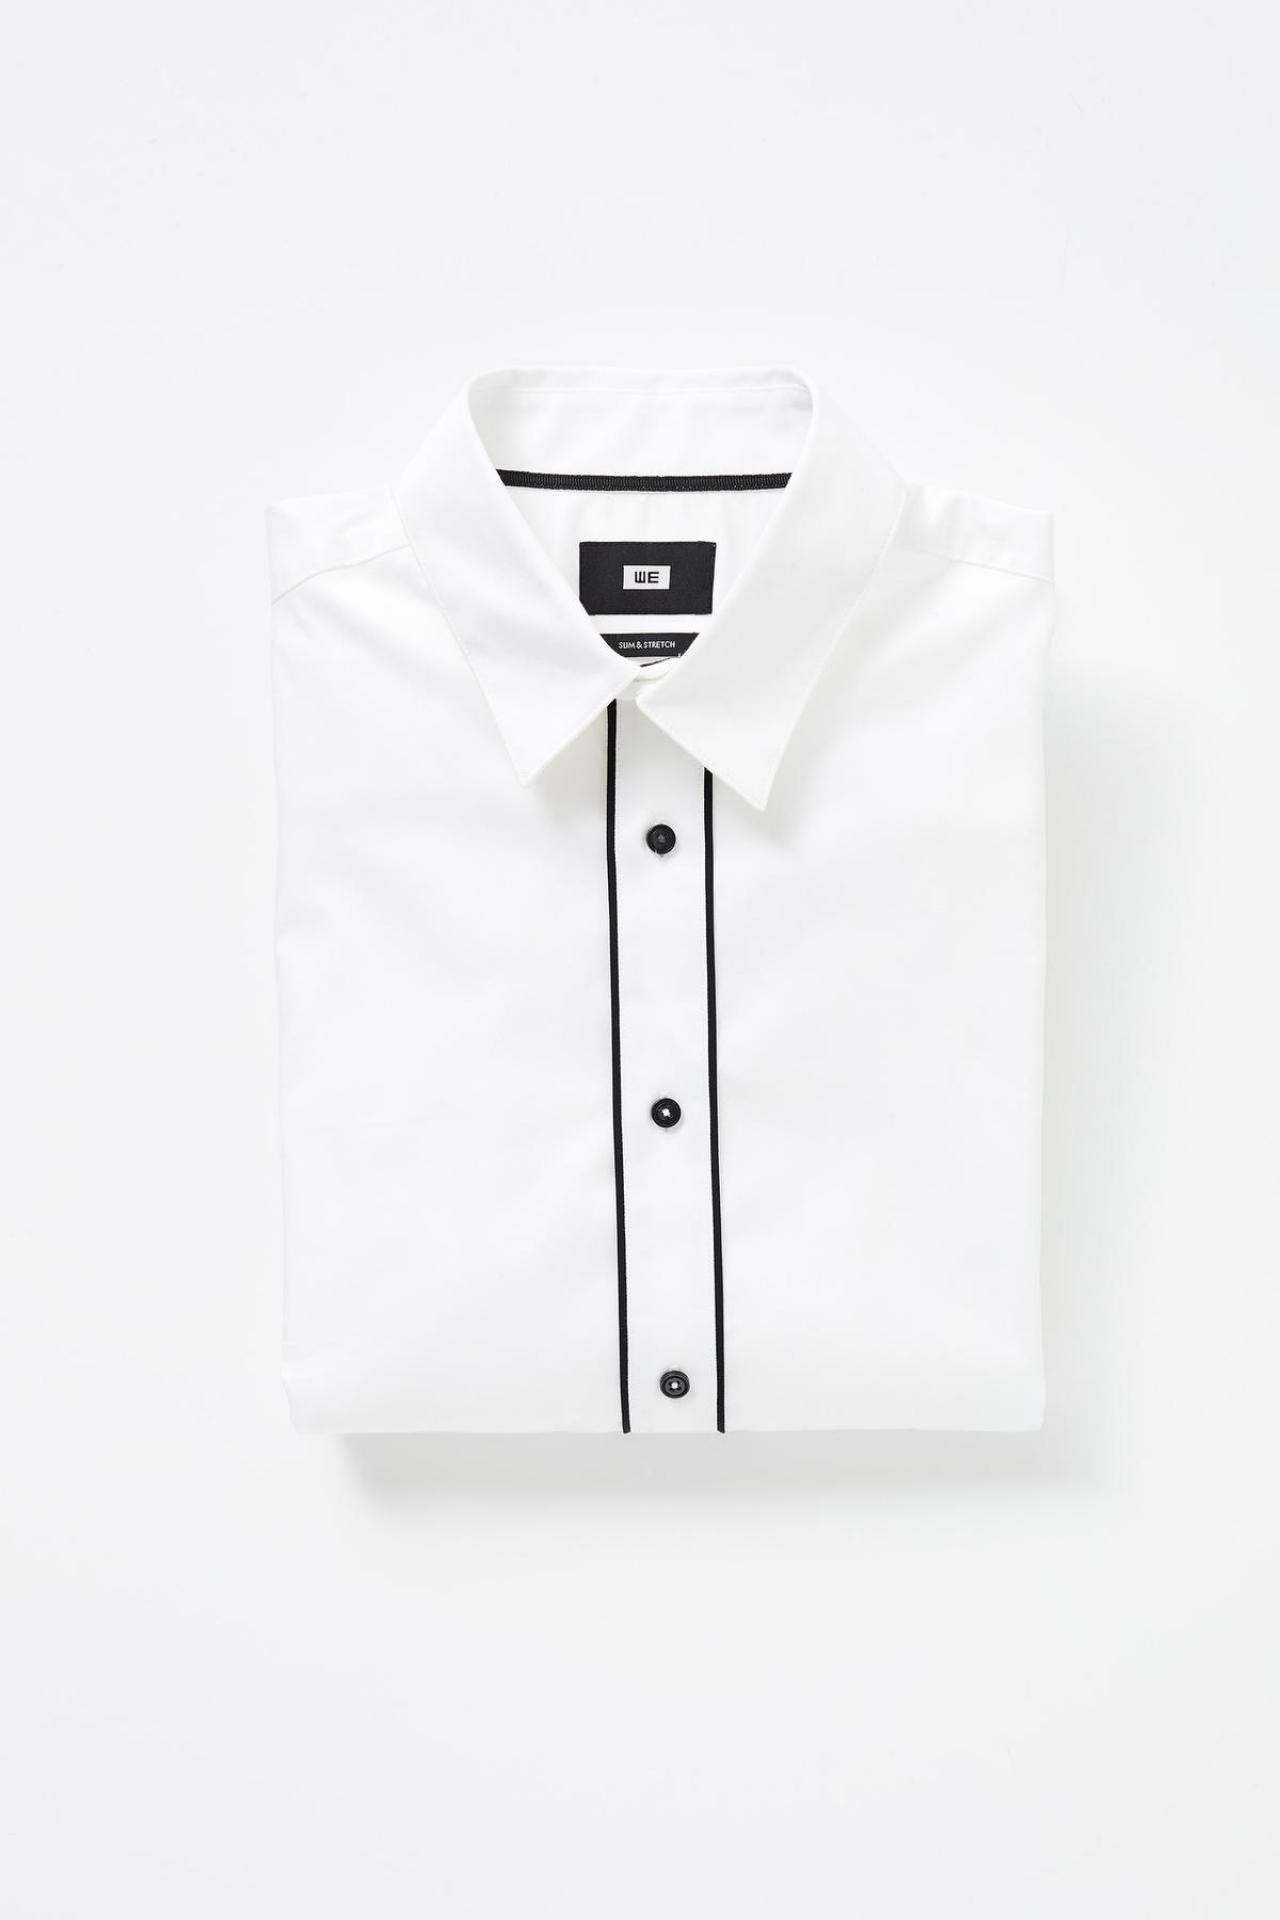 Basic met een twistFeestelijk hemd in wit met zwarte details (40 euro), van WE Fashion.